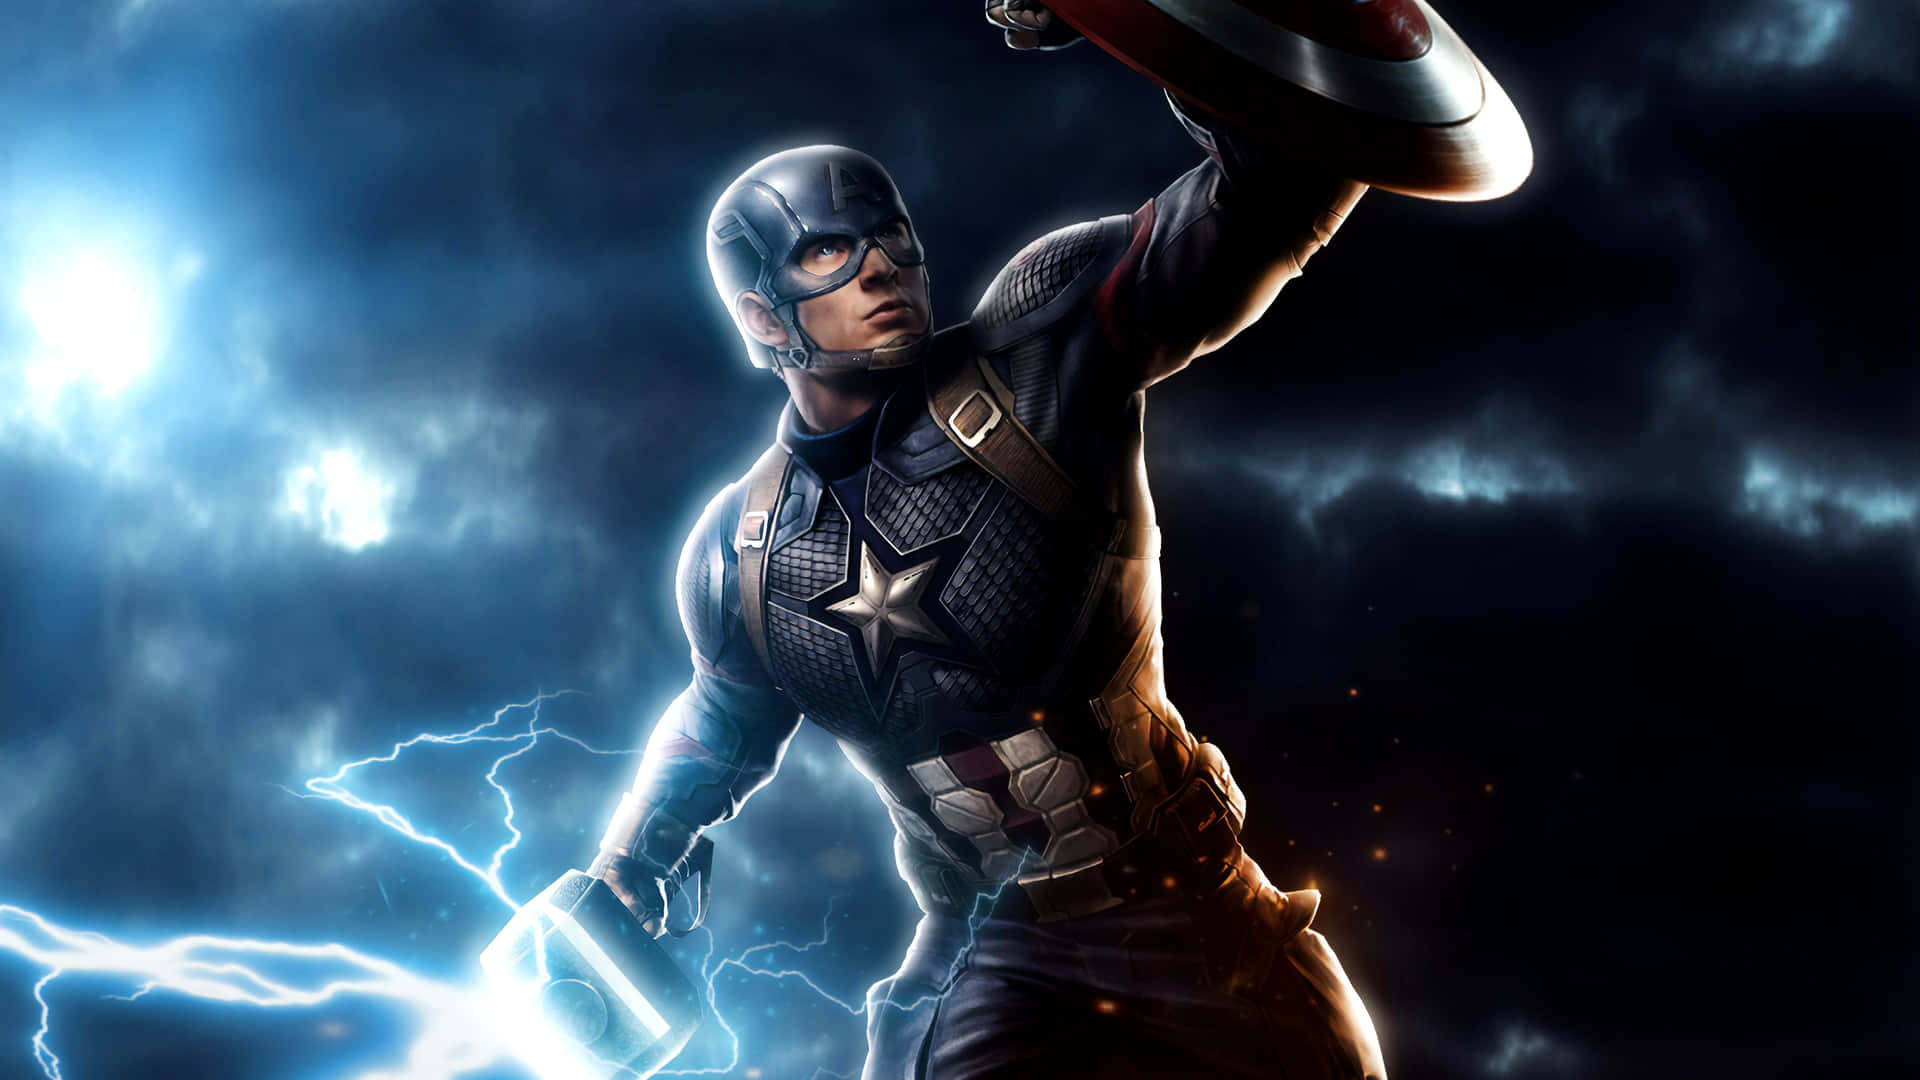 Bliinspirerad Av Hjältarna I Marvel-universumet Med Denna Captain America Skrivbordsskärm. Wallpaper